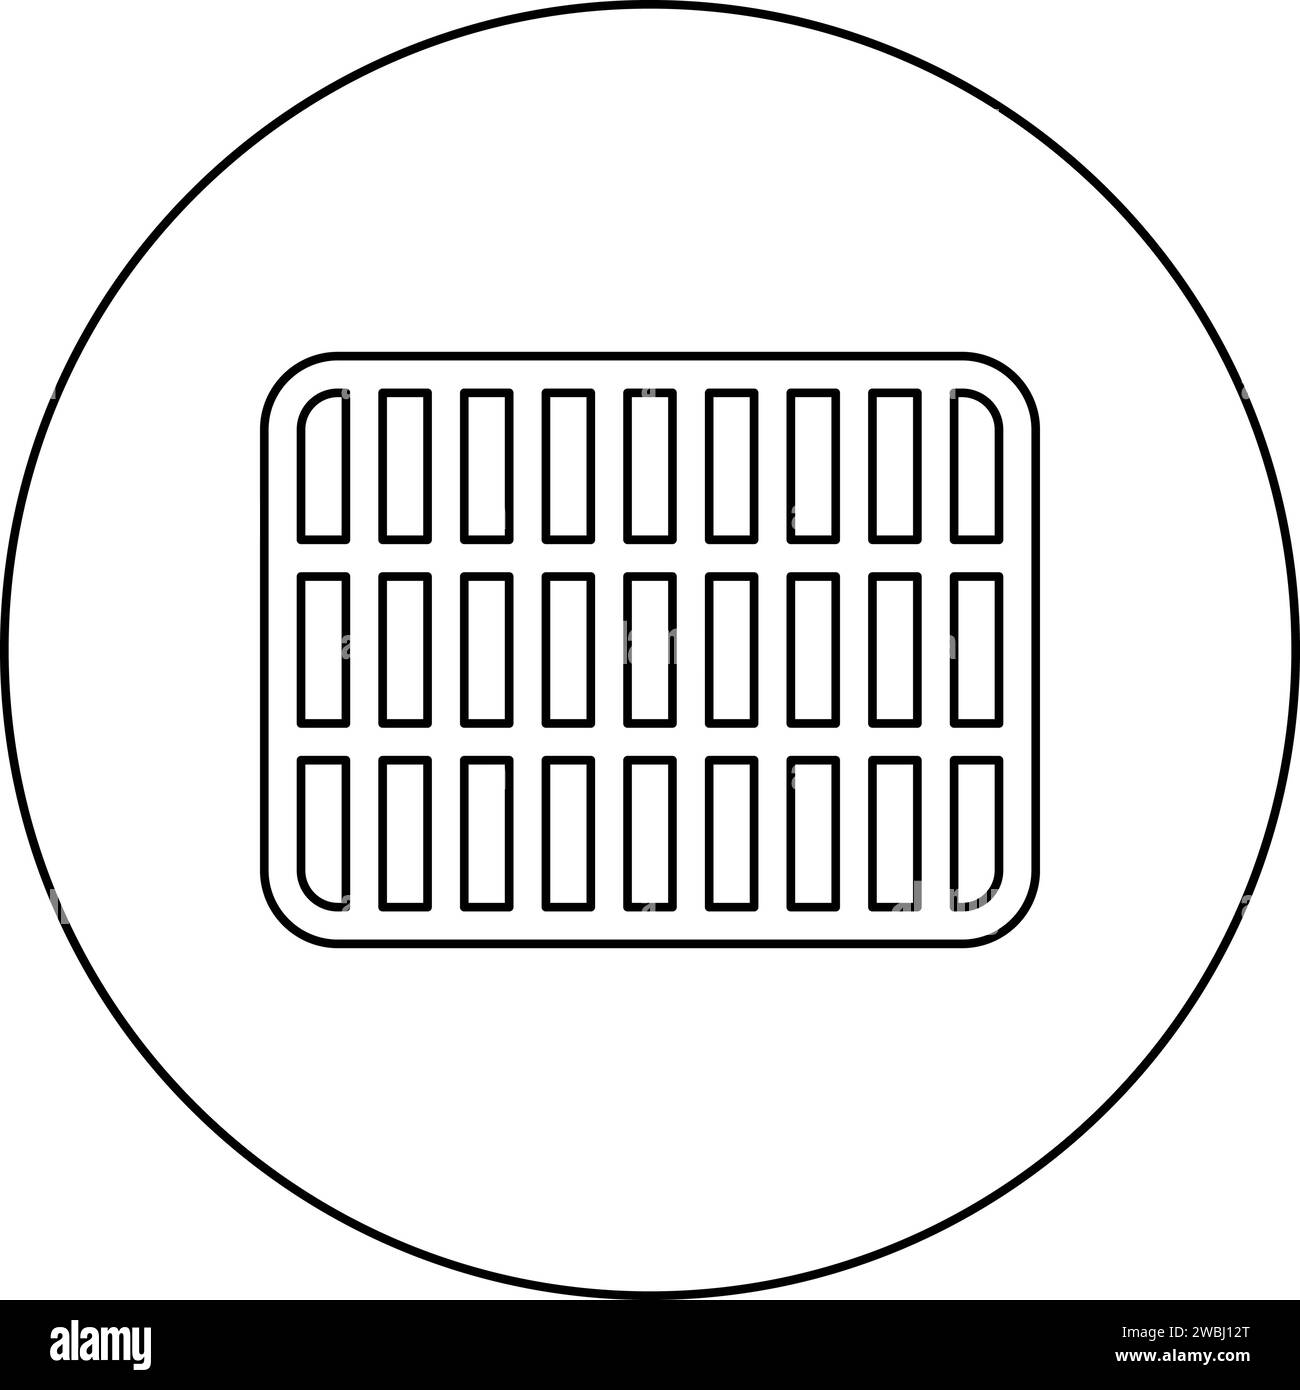 Grille de grille treillis treillis treillis treillis grillage grill grill grill surface de cuisson rectangle forme icône de rondeur dans le cercle rond illustration vectorielle de couleur noire Illustration de Vecteur